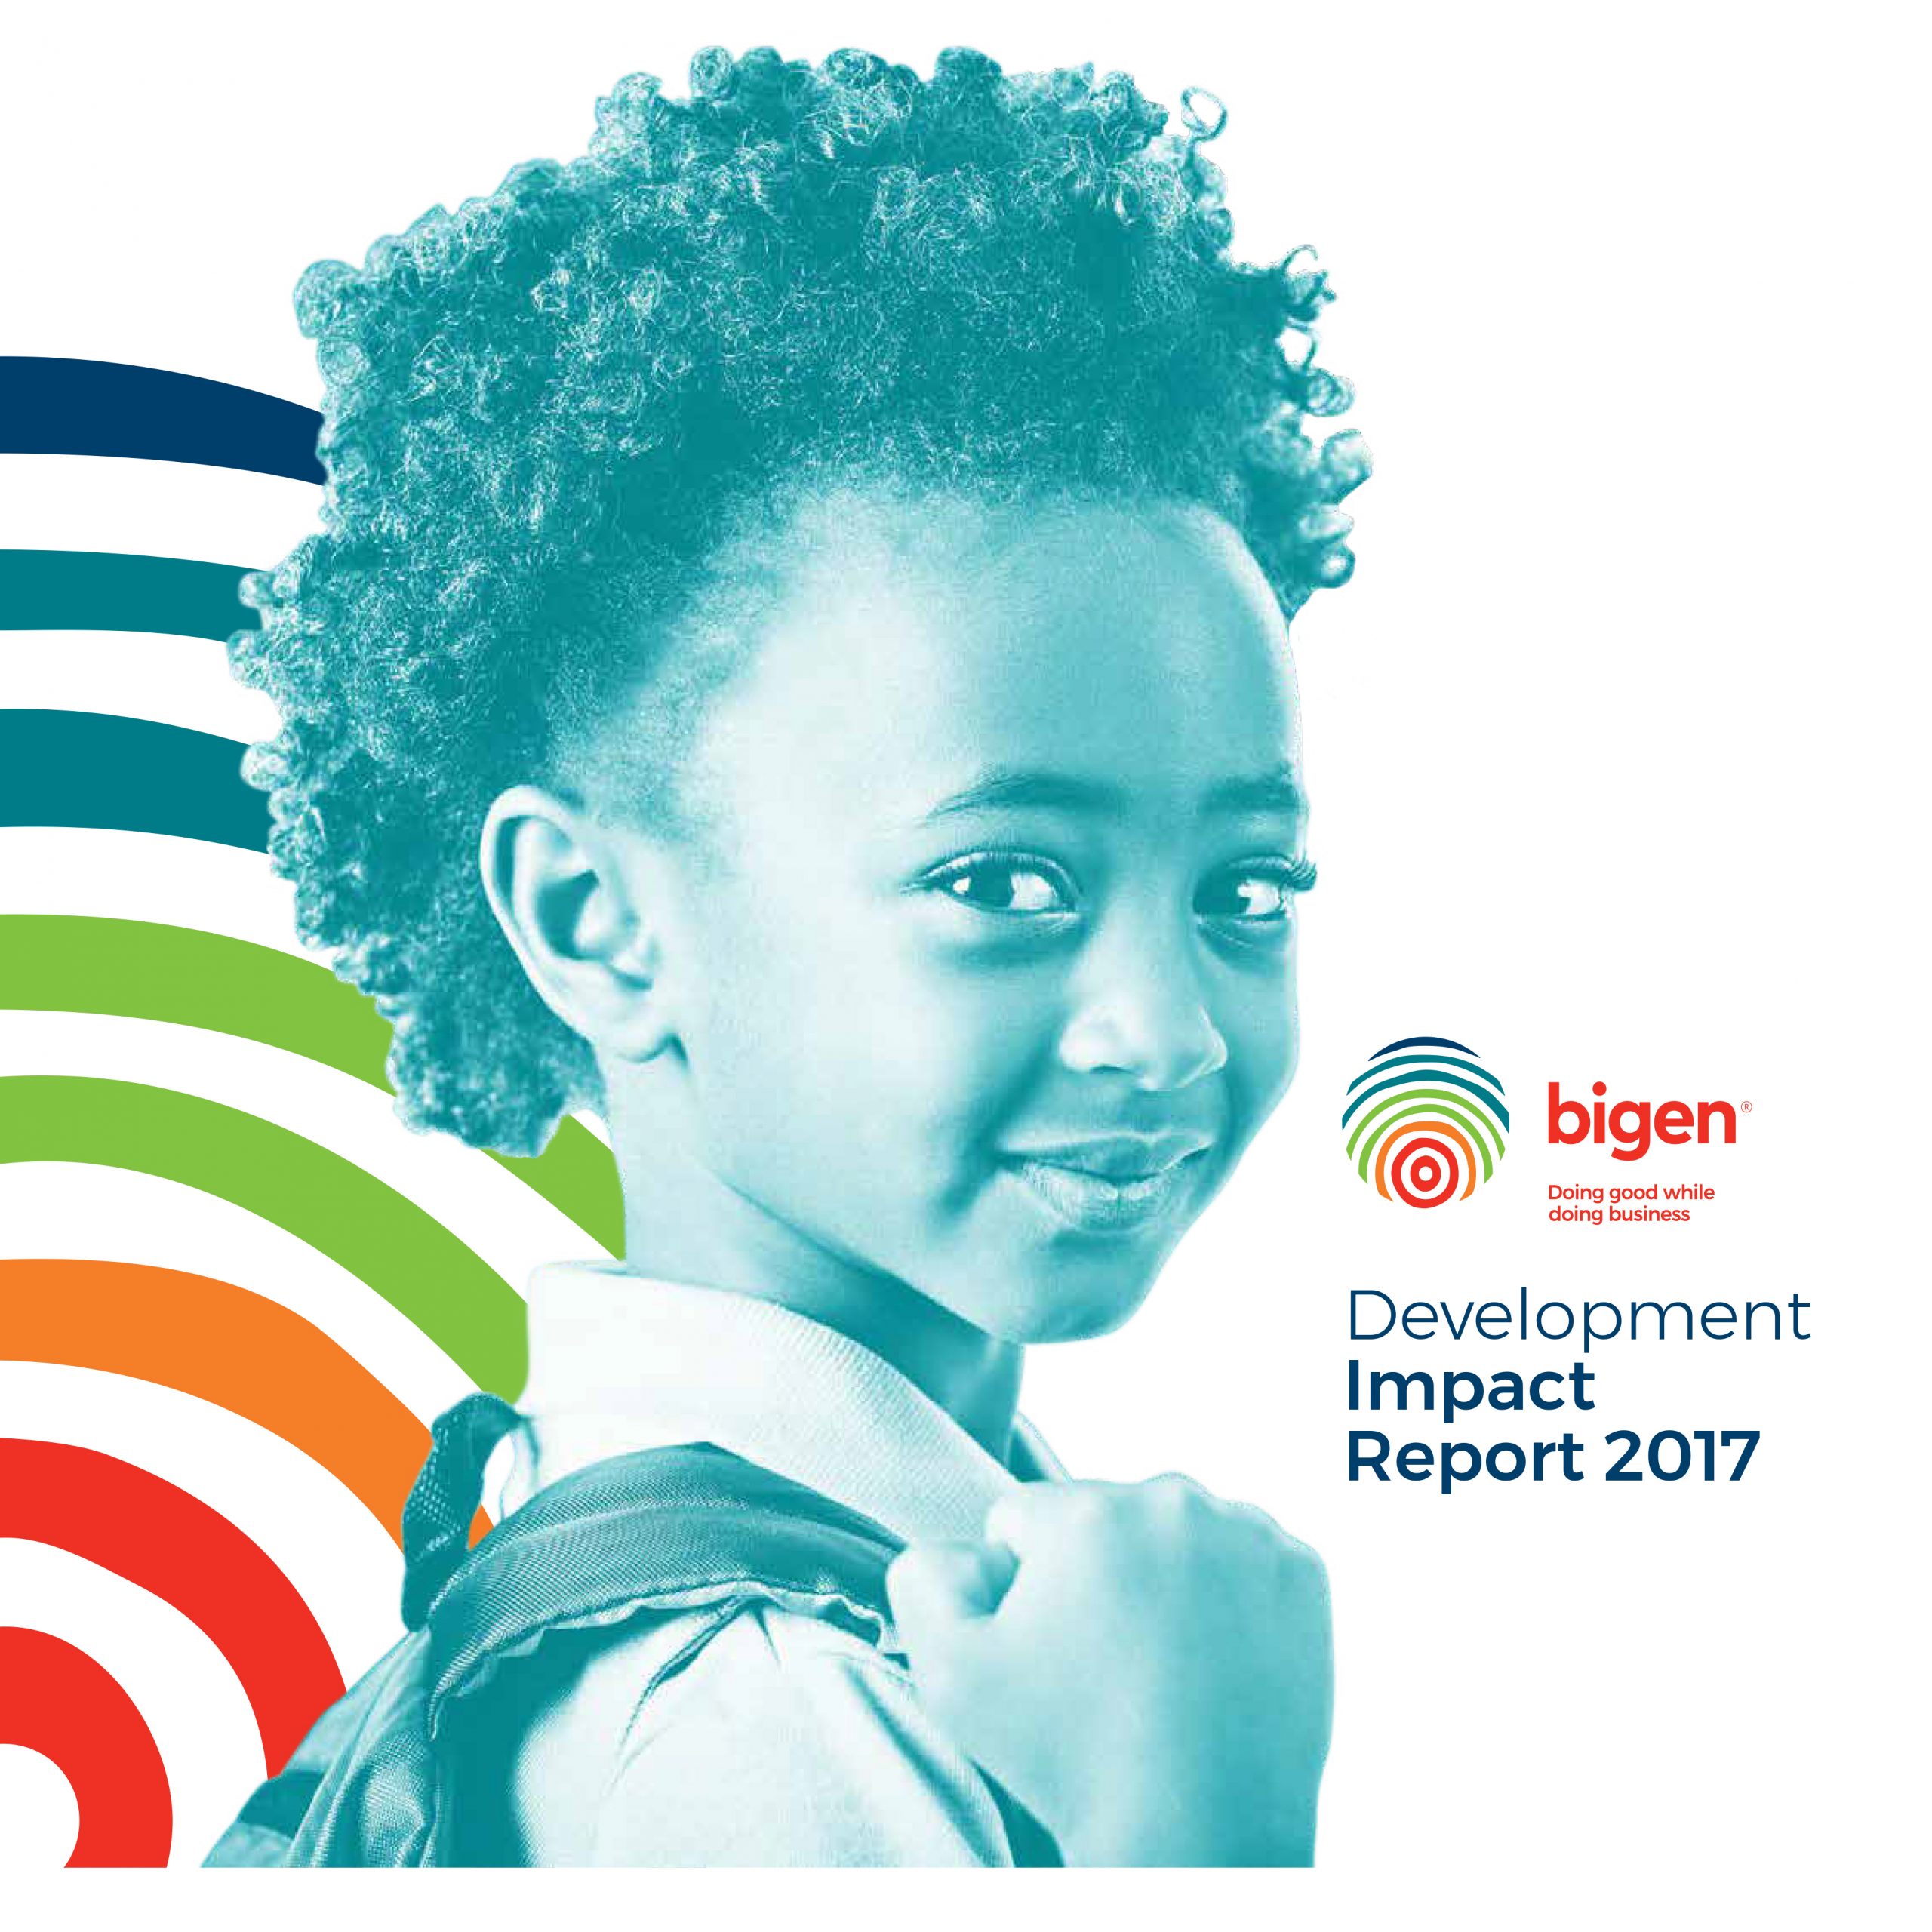 Bigen Group Development Impact Report 2017